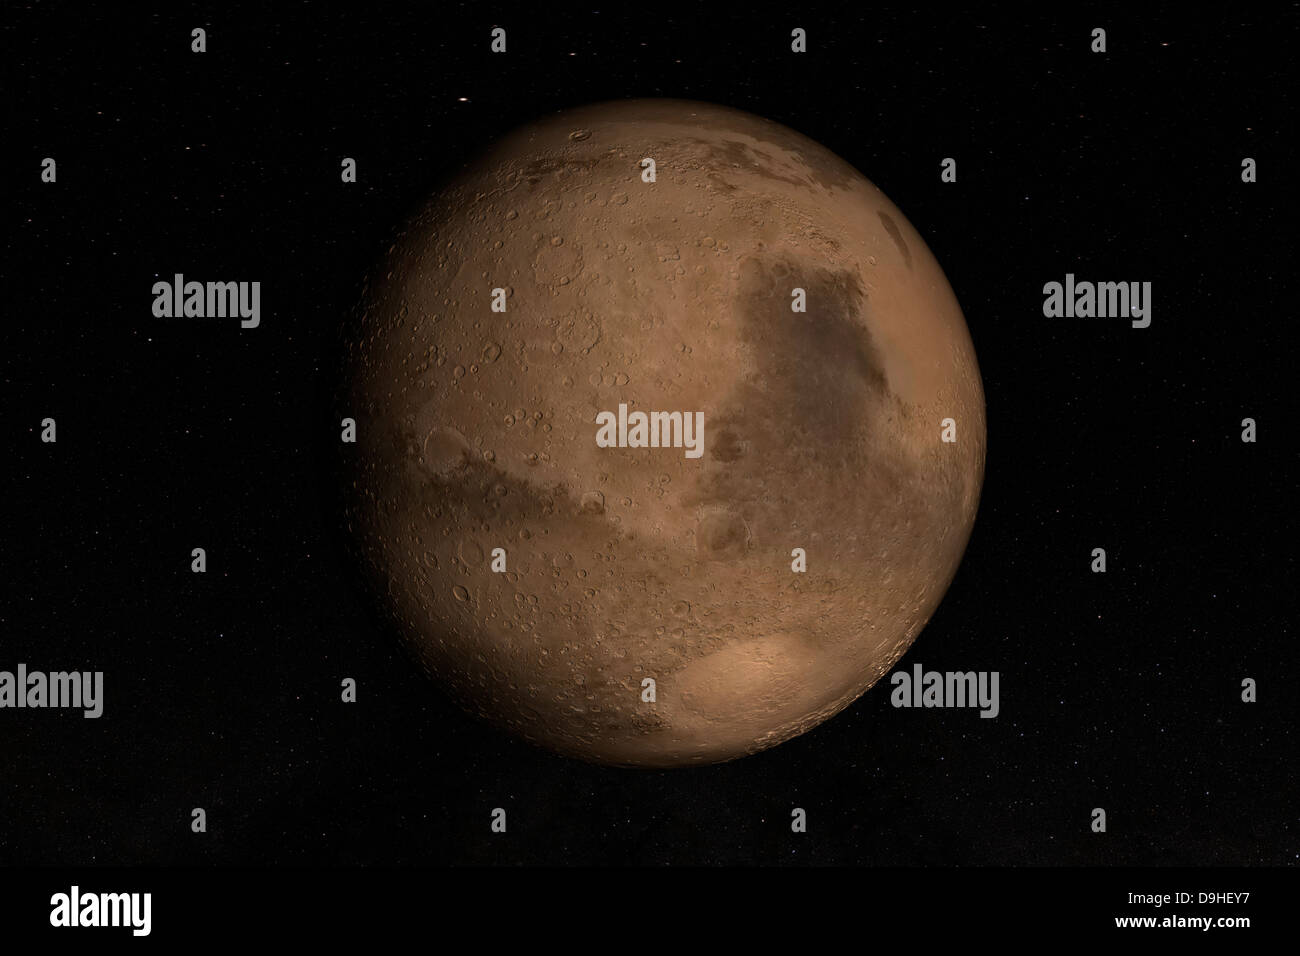 El planeta Marte. La Cuenca de Hellas puede verse en la parte inferior derecha de la imagen. Foto de stock